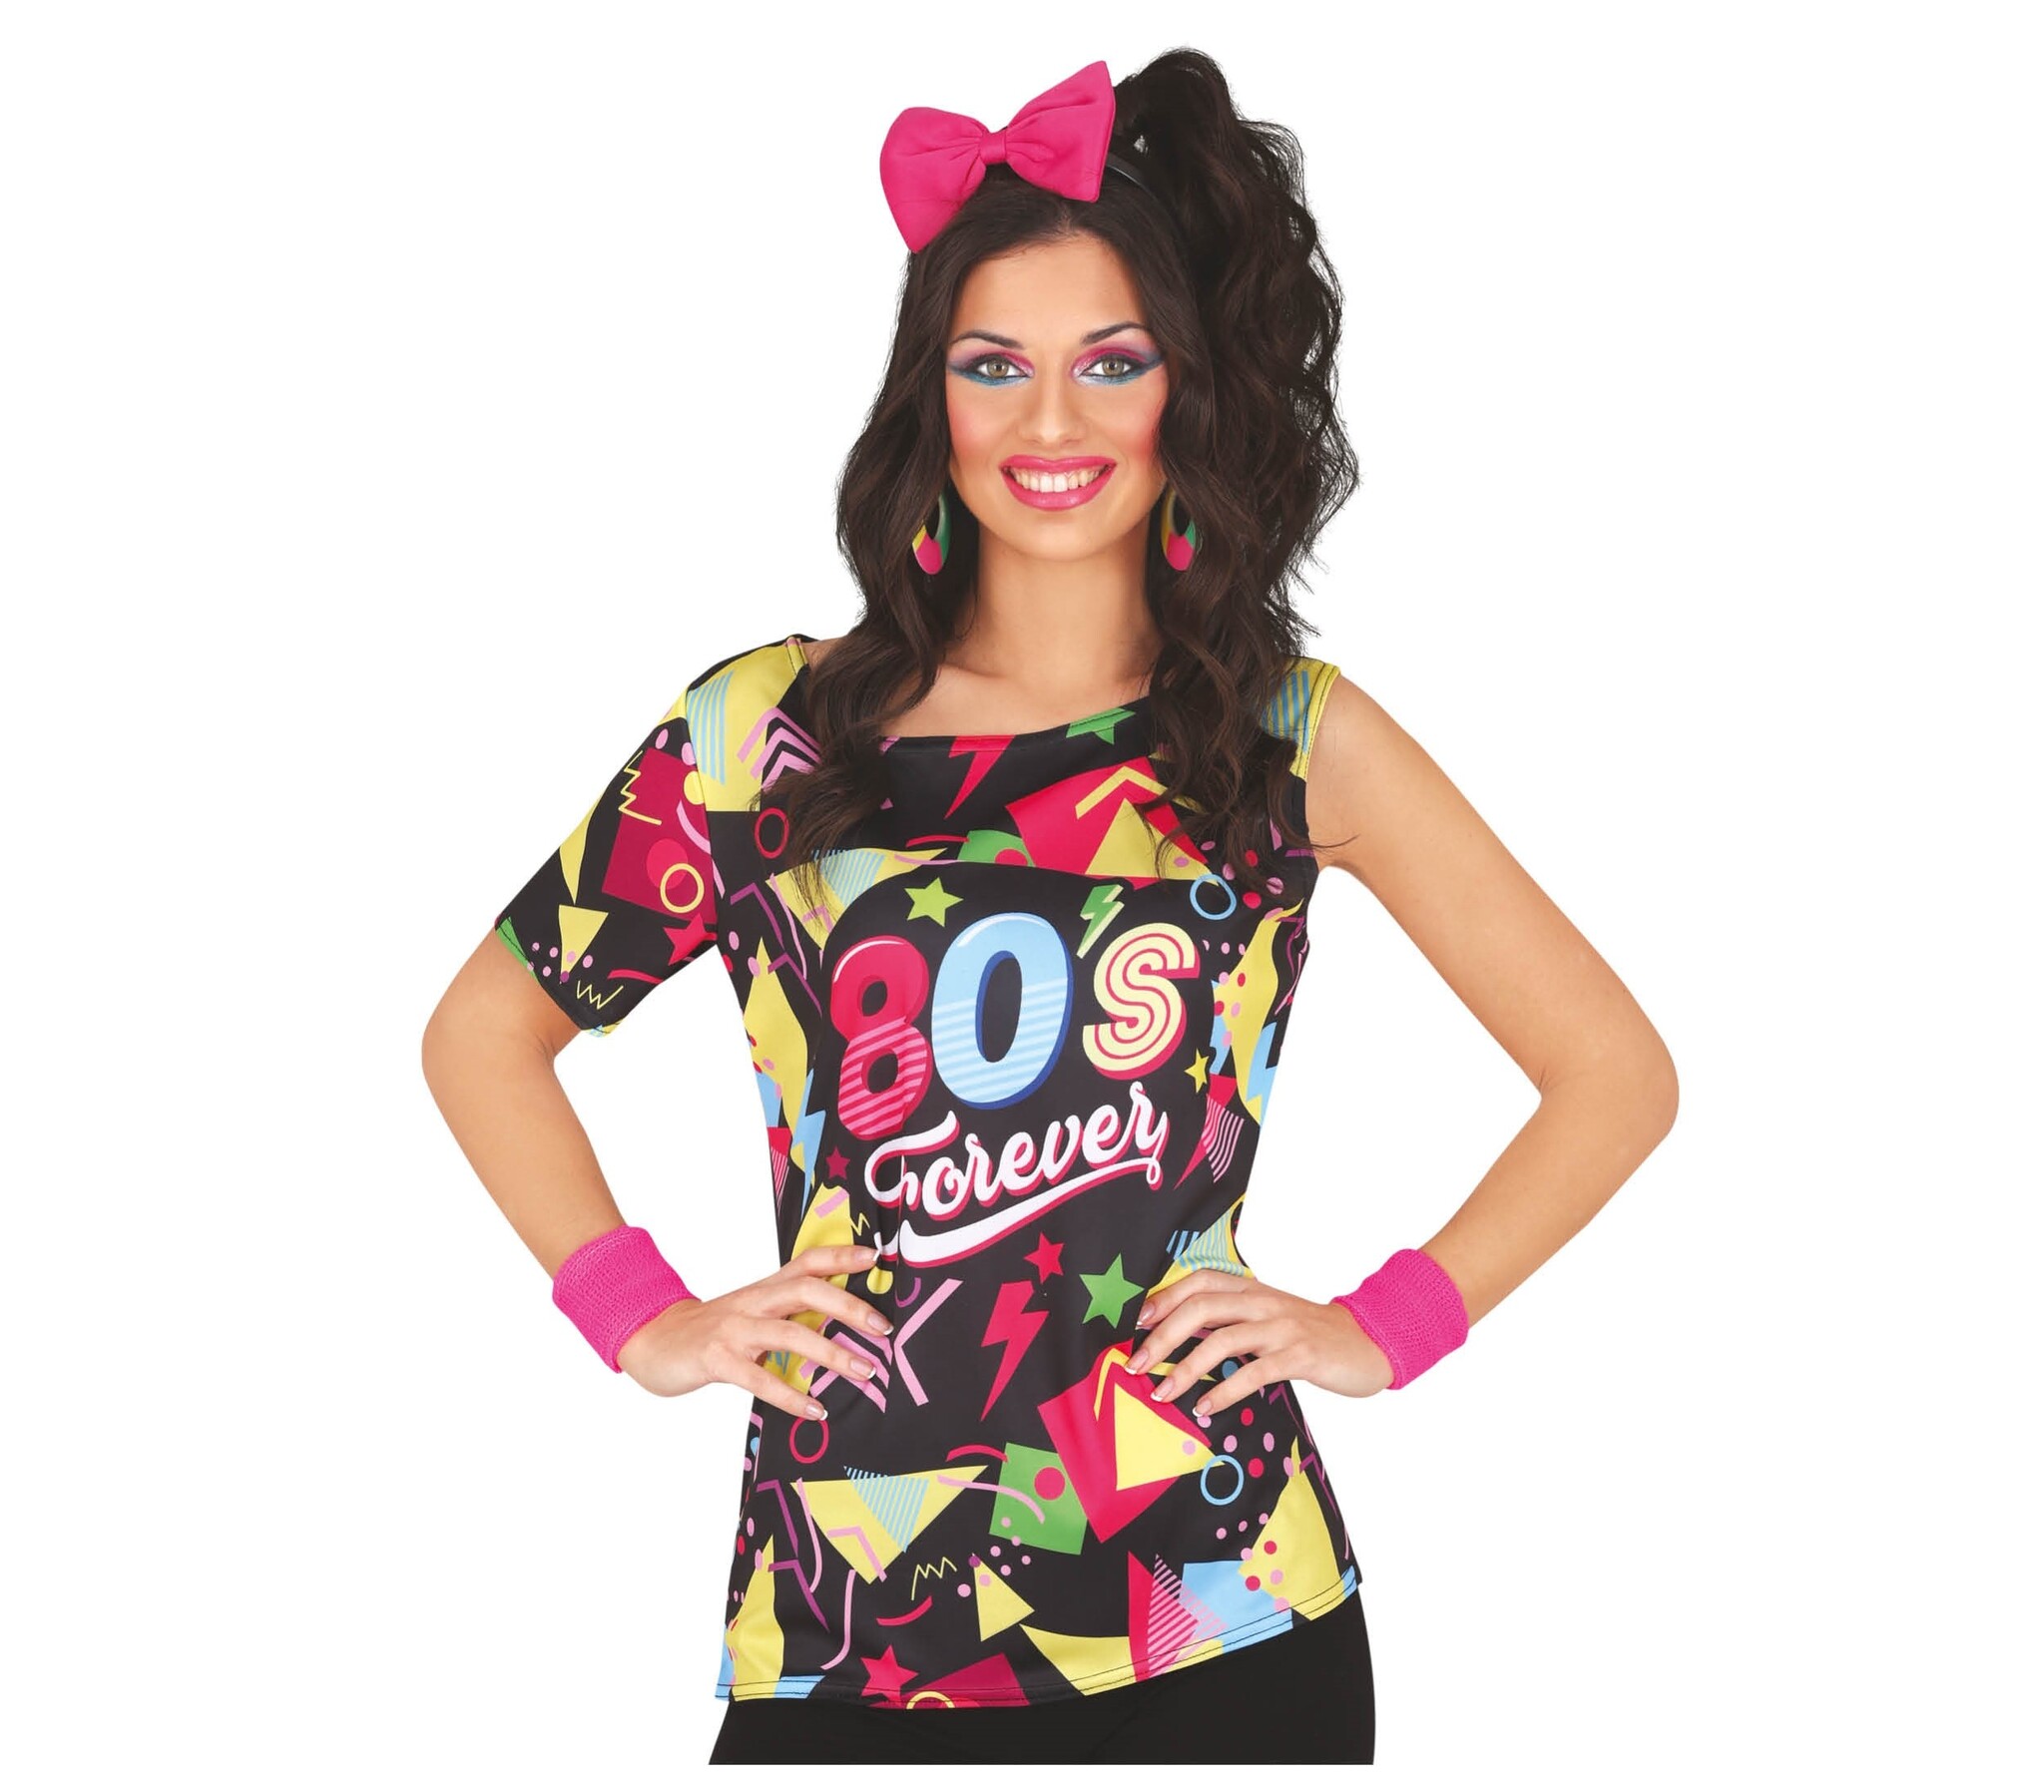 Guirca - Jaren 80 & 90 Kostuum - Forever 80s Club Shirt Vrouw - Multicolor - Maat 42-44 - Carnavalskleding - Verkleedkleding